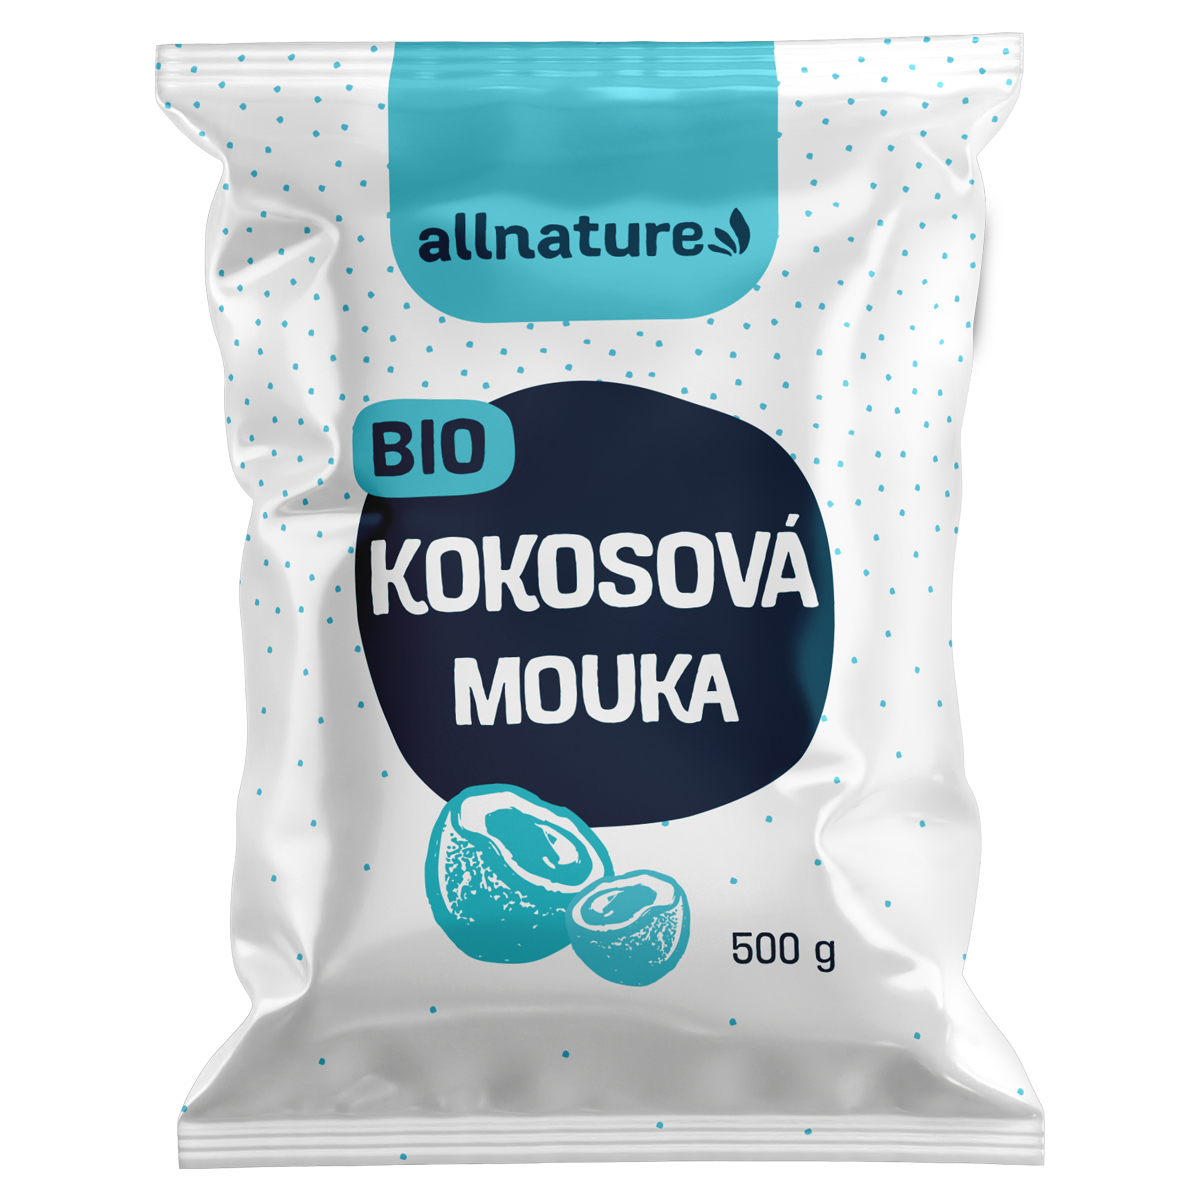 Allnature Kokosová mouka BIO (500 g) - II. jakost - bohatá na bílkoviny a vlákninu Allnature